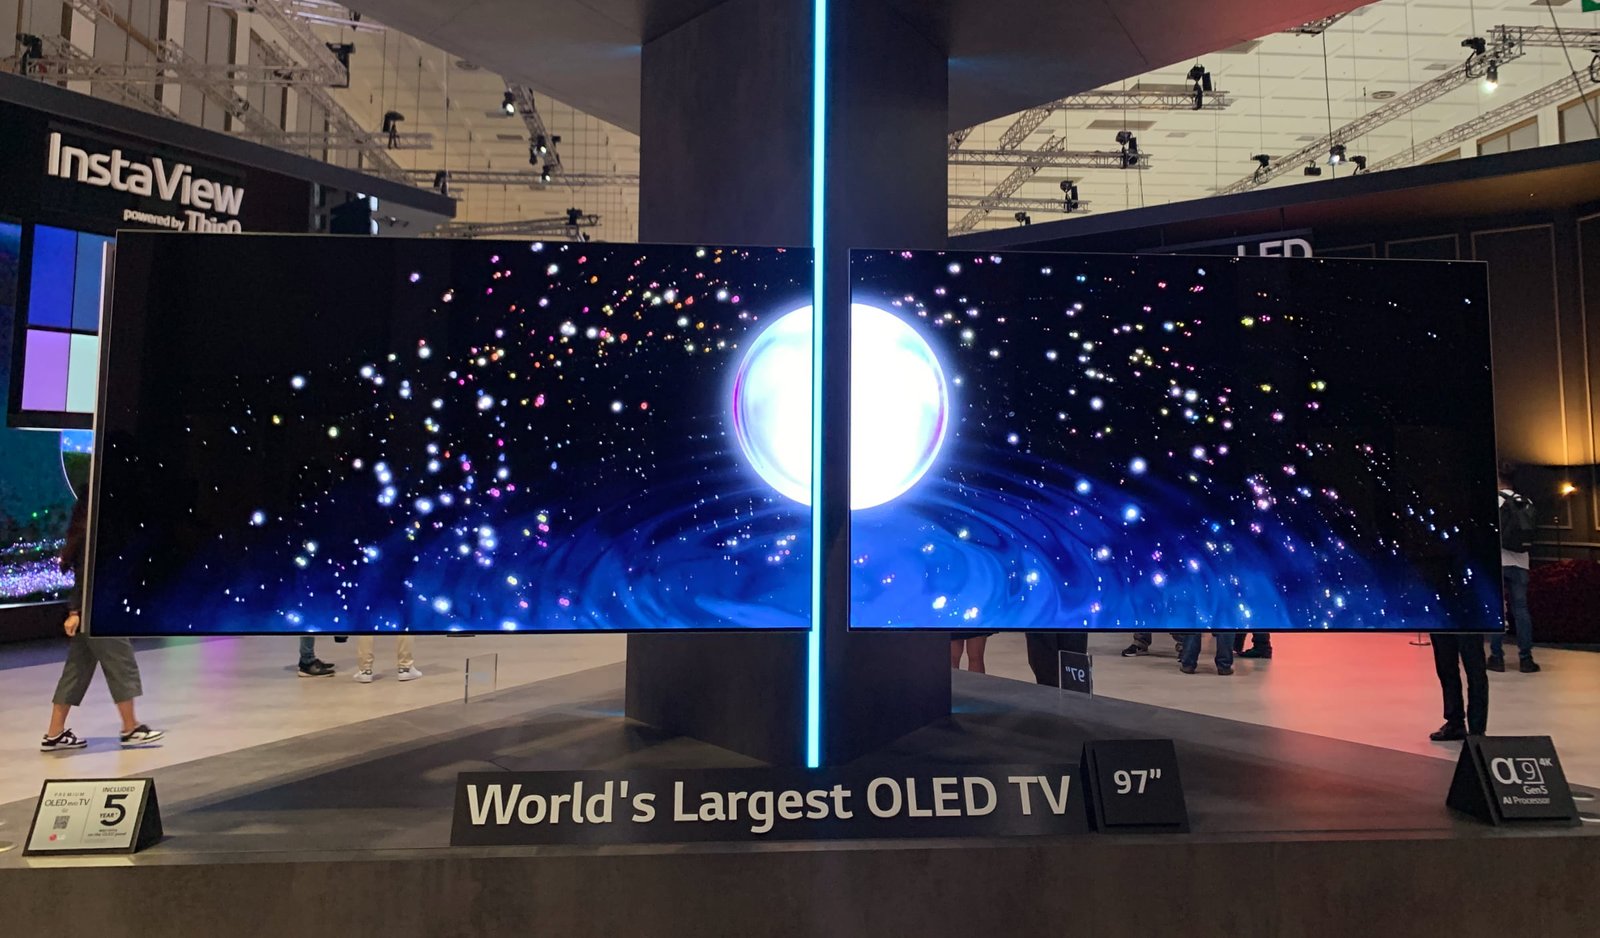 LG ने किया दुनिया का सबसे बड़ा OLED TV लॉन्च